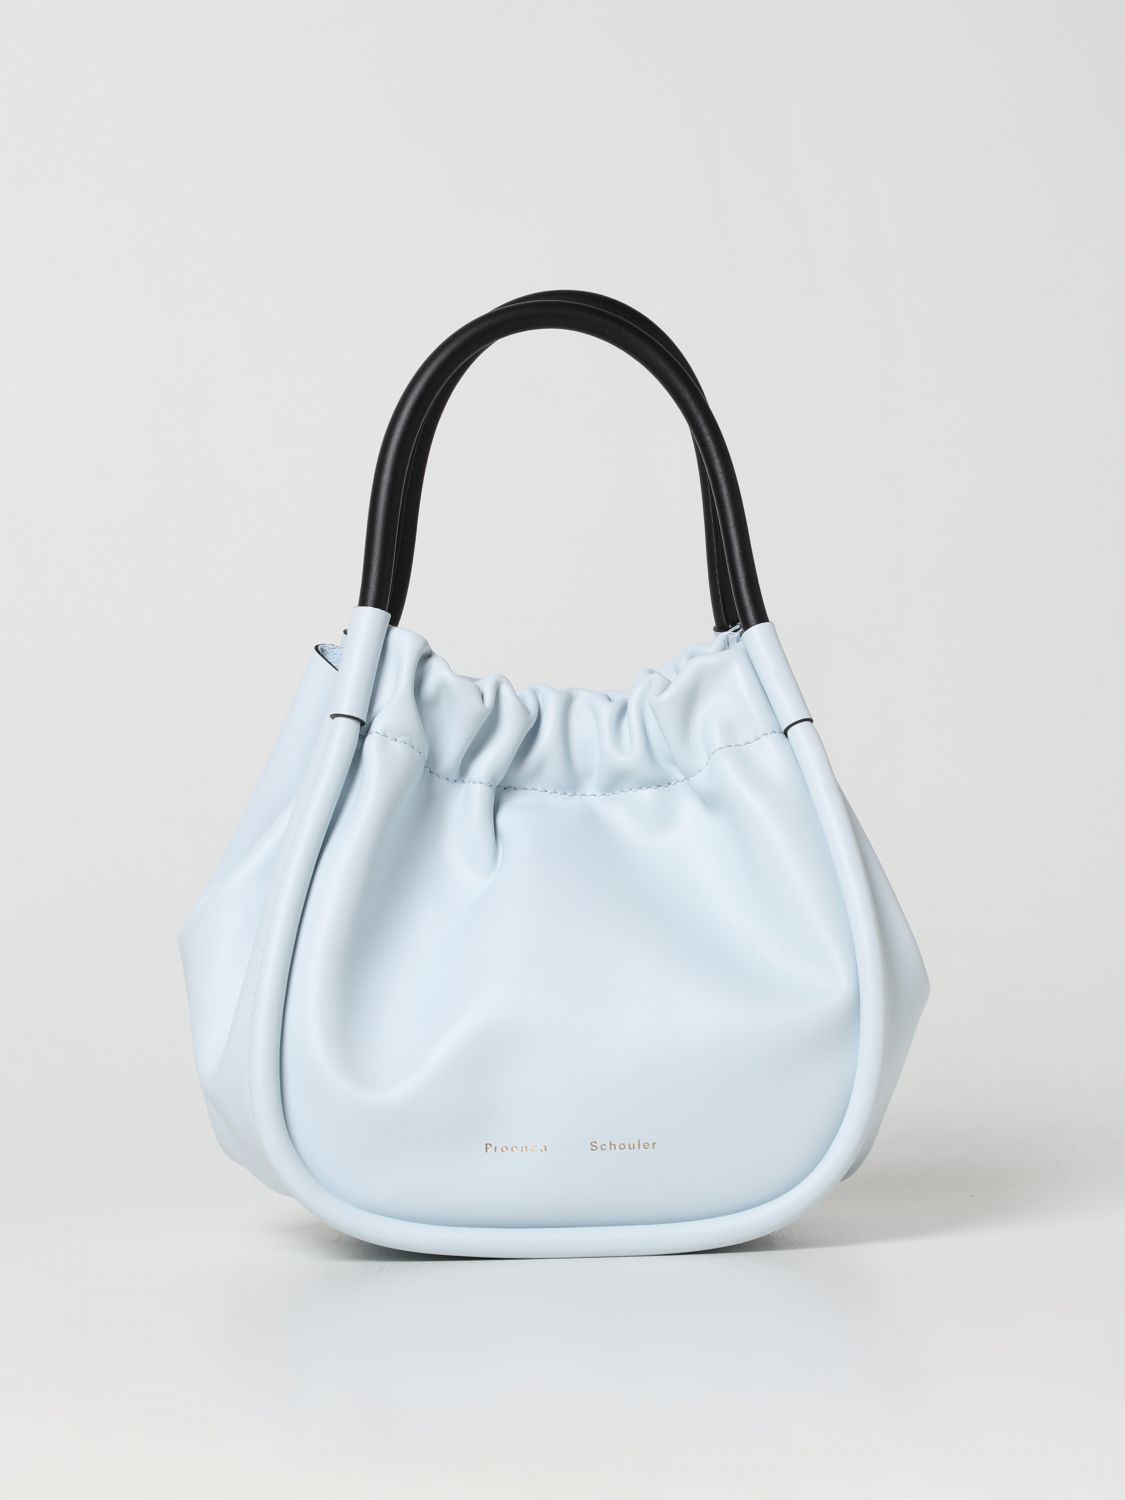 BLUE - Women's leather bags & purses: shop online